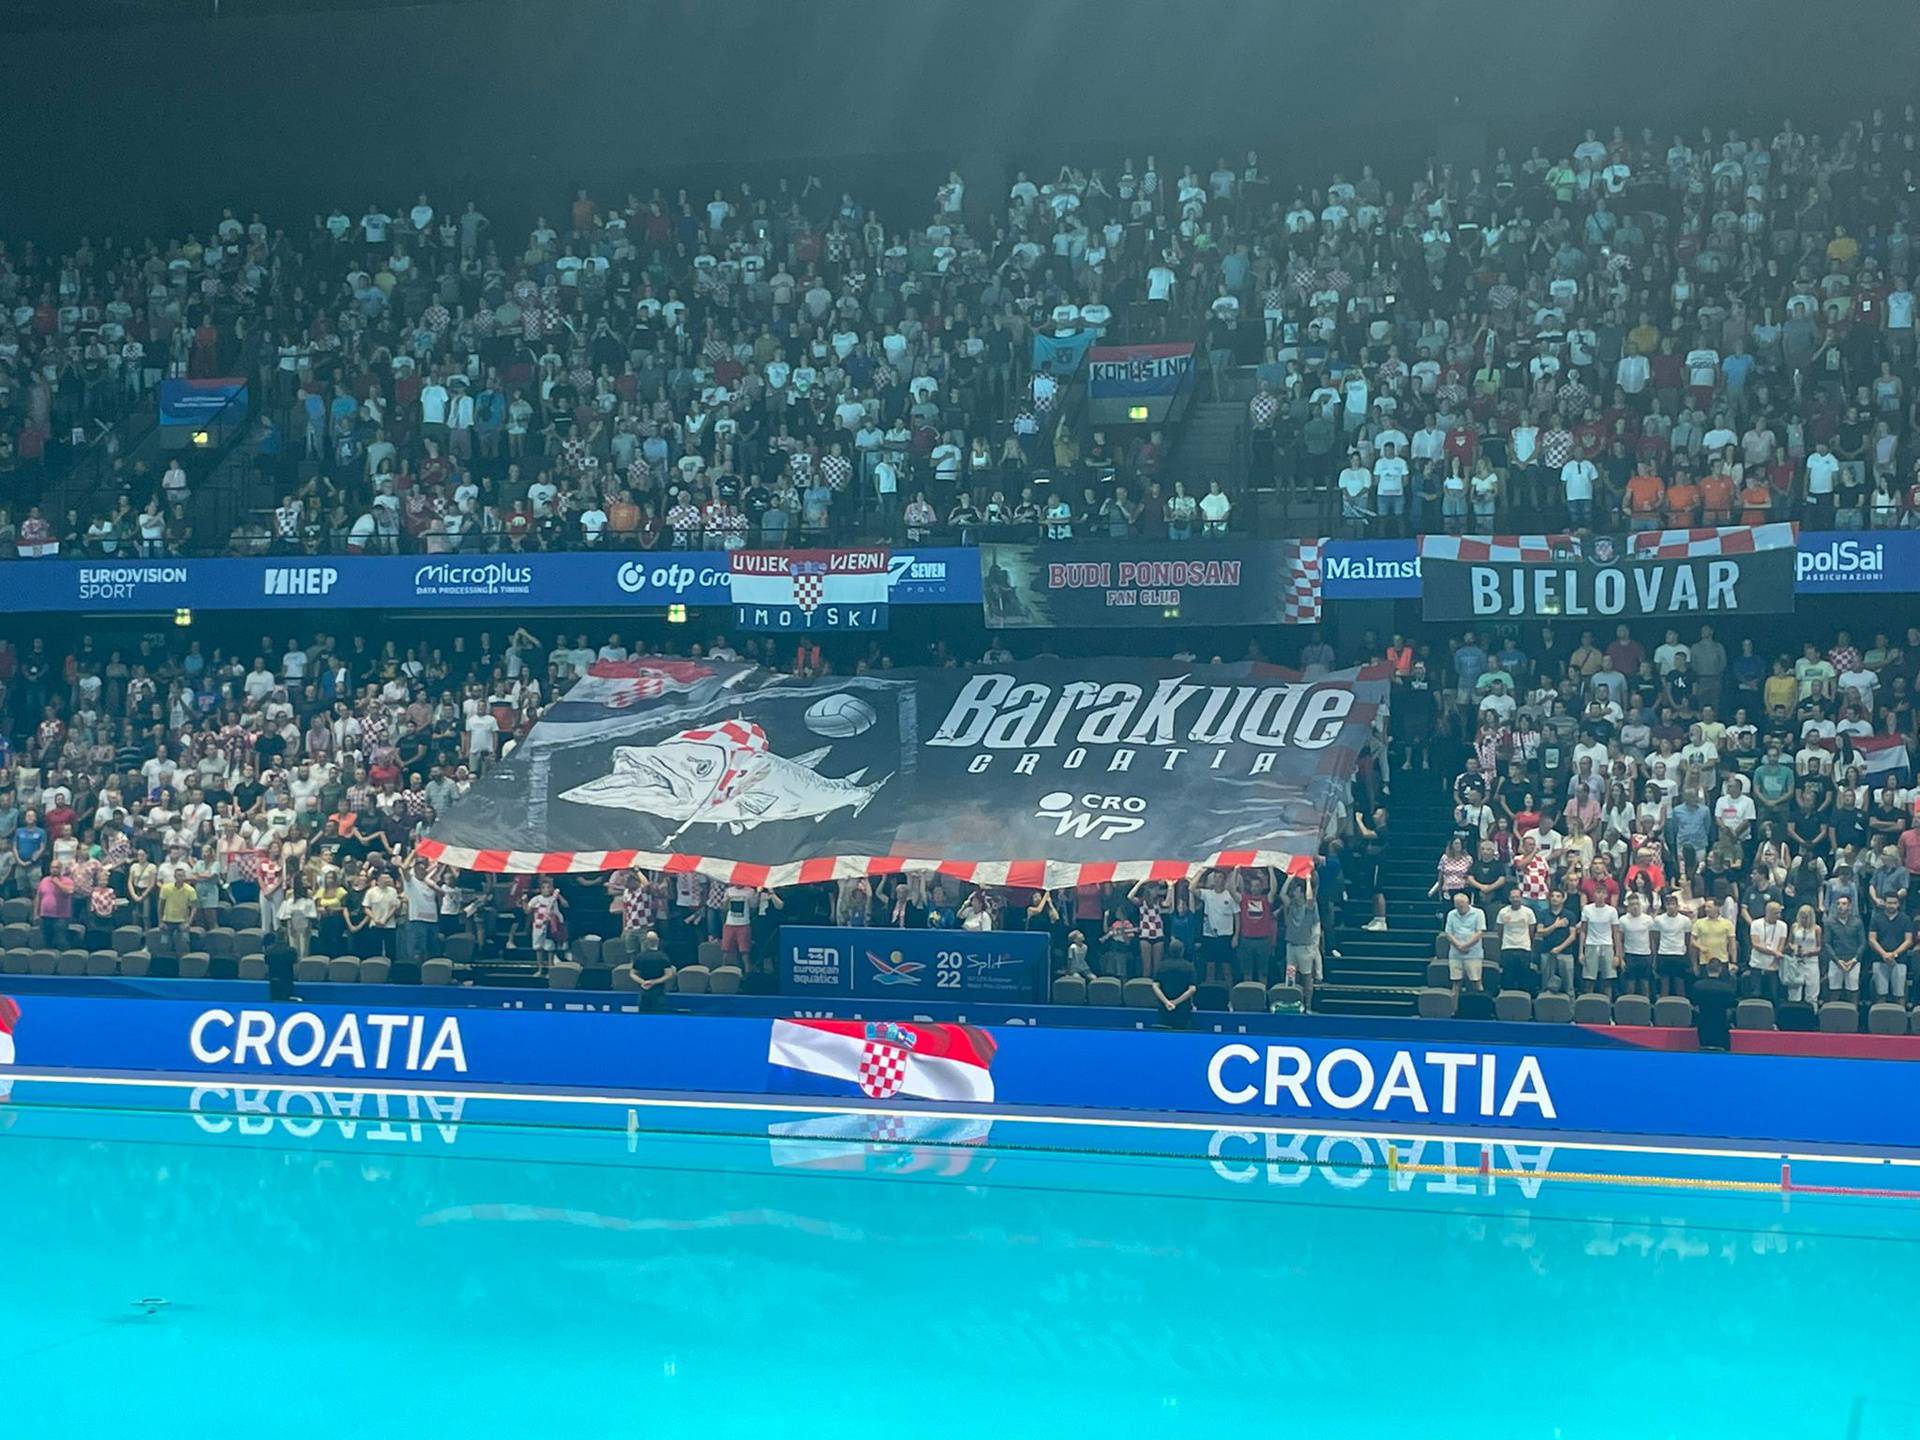 'Barakude' remizirale s Grčkom u Splitu i osigurale četvrtfinale